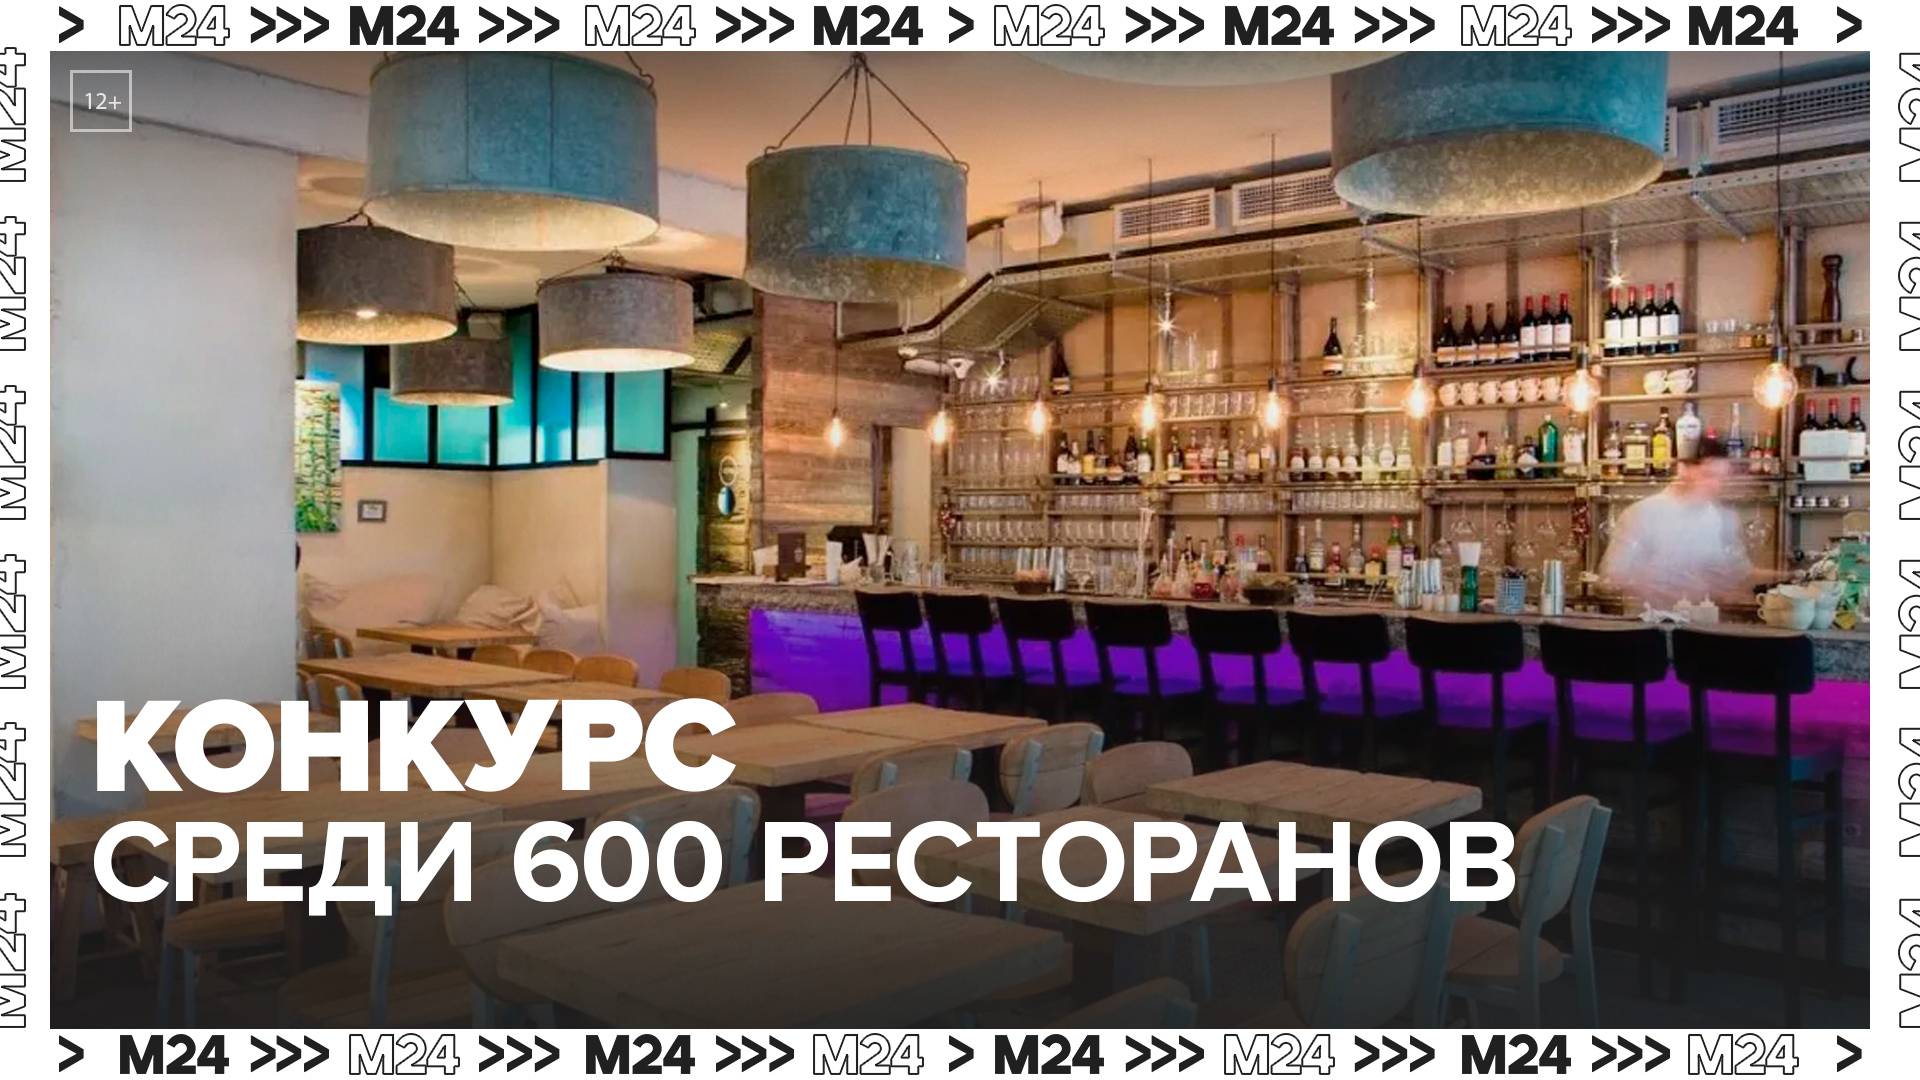 Почти 600 ресторанов Москвы участвуют в конкурсе по сезонному оформлению своих площадей — Москва 24